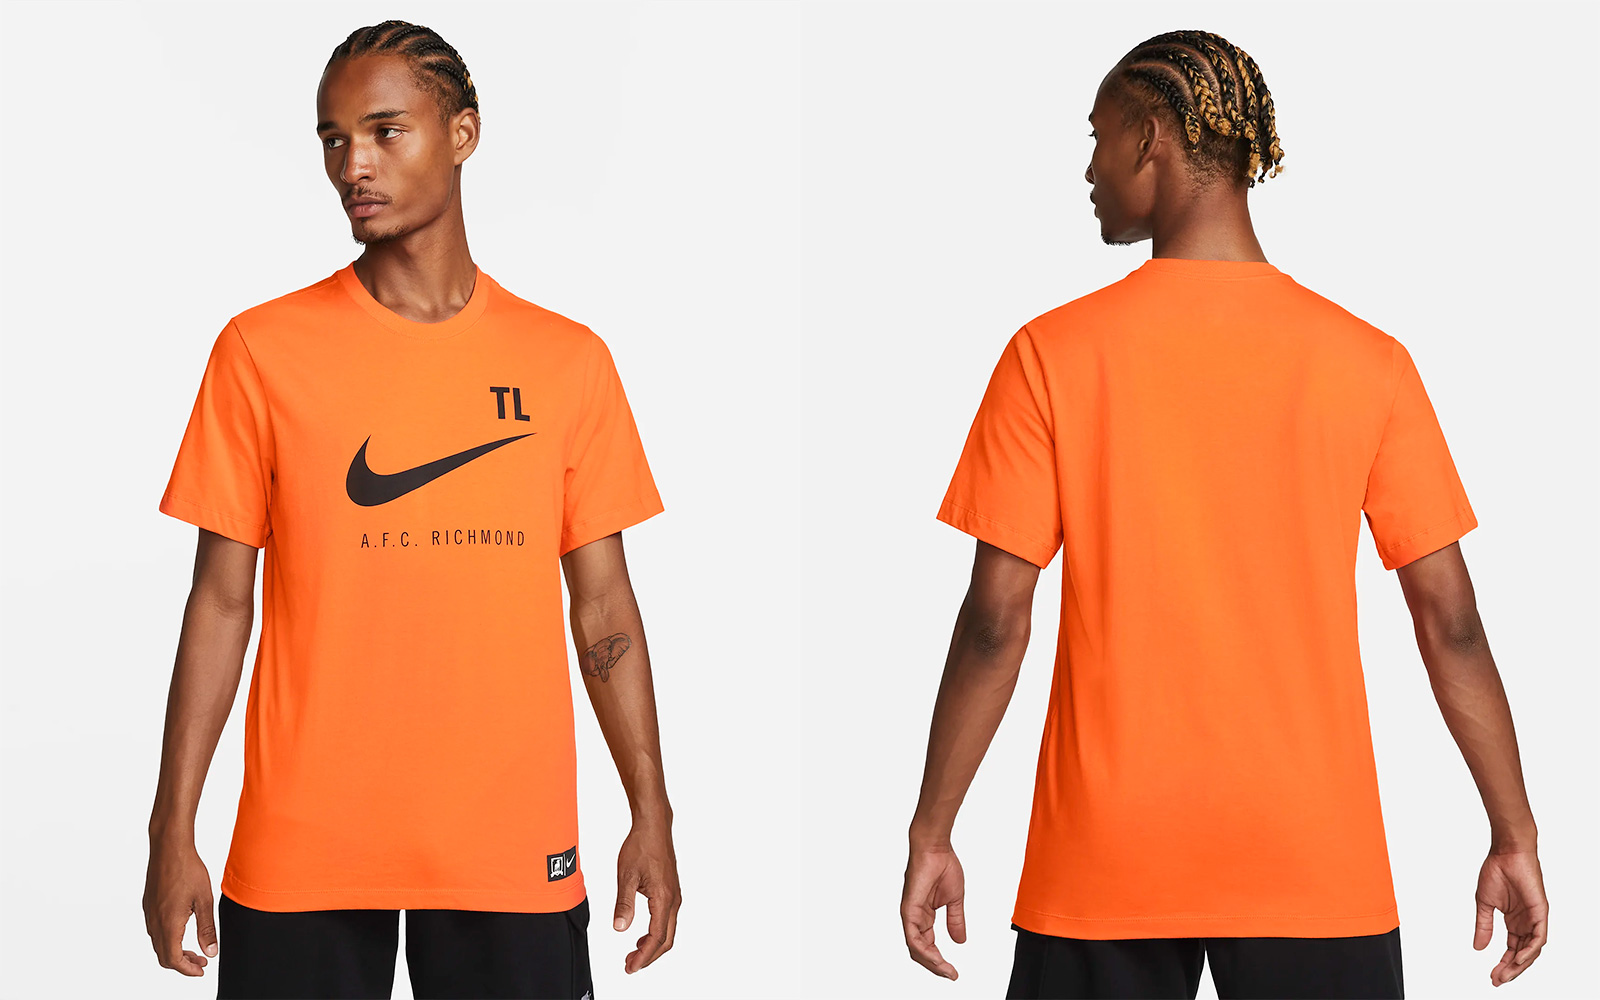 AFC Richmond Orange T-Shirt